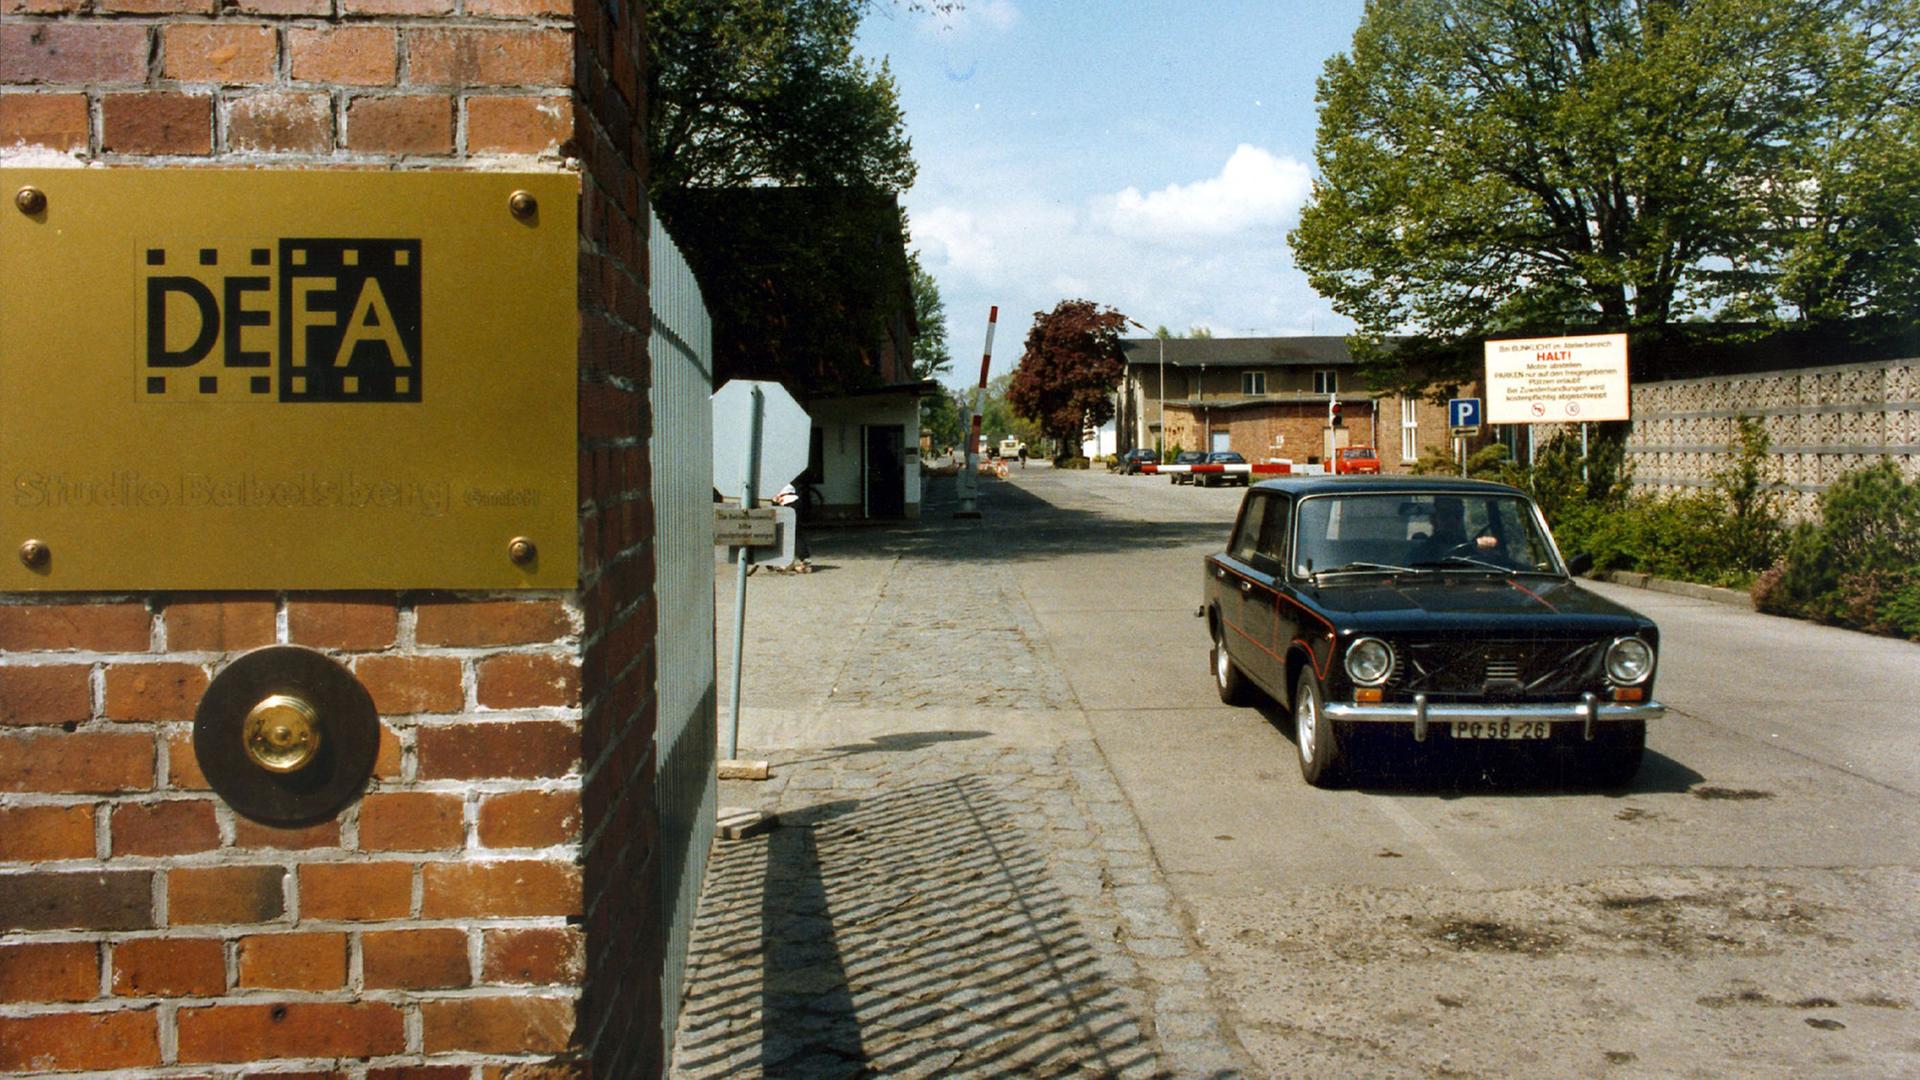 Eine Einfahrt mit einem Schild mit der Aufschrift "DEFA".